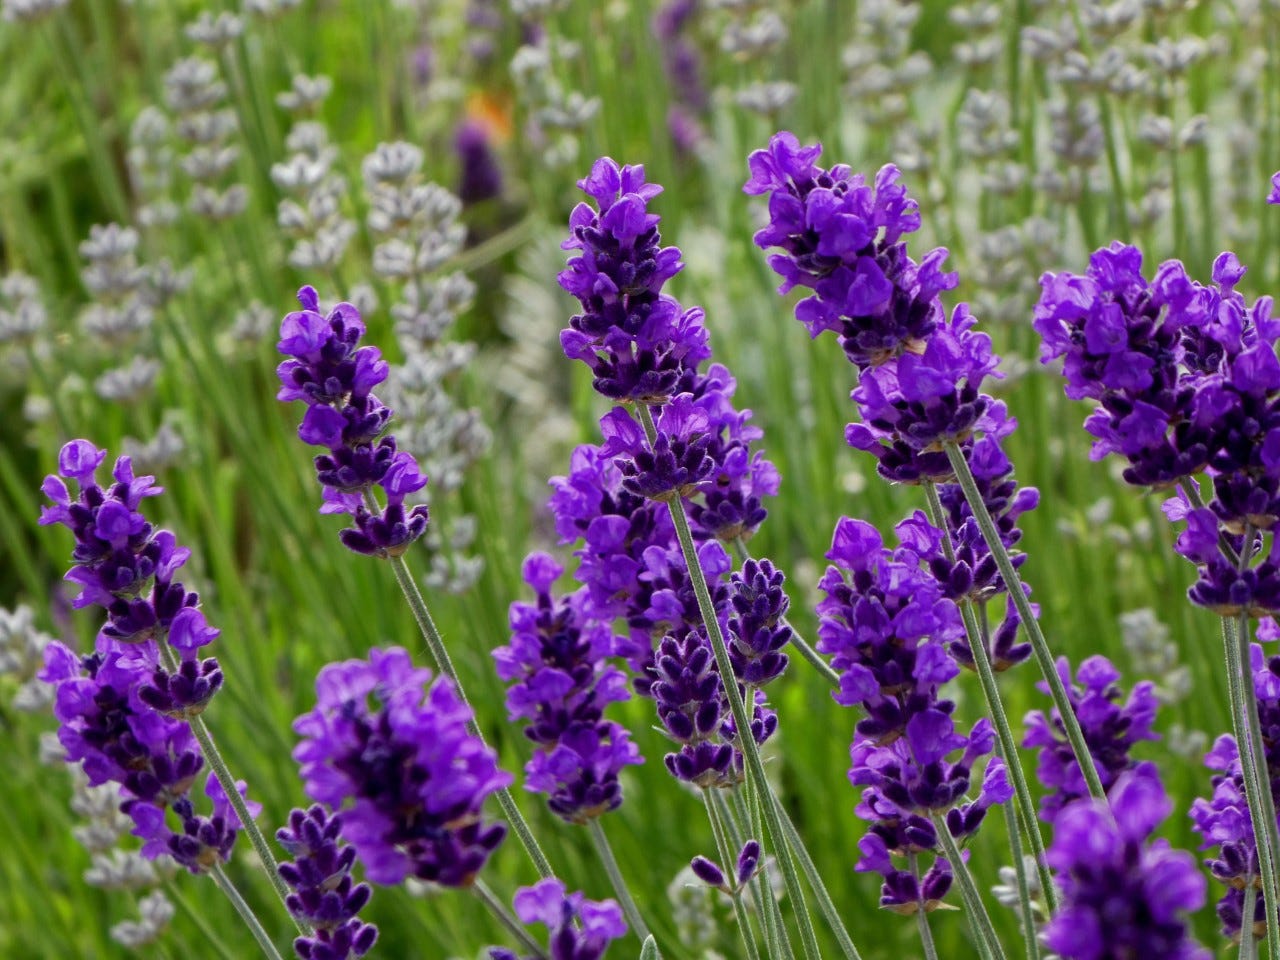 Loài hoa màu tím đậm đặc trưng như lavender mang trong mình vẻ đẹp thanh thoát, nhẹ nhàng và một chút mộng mơ.